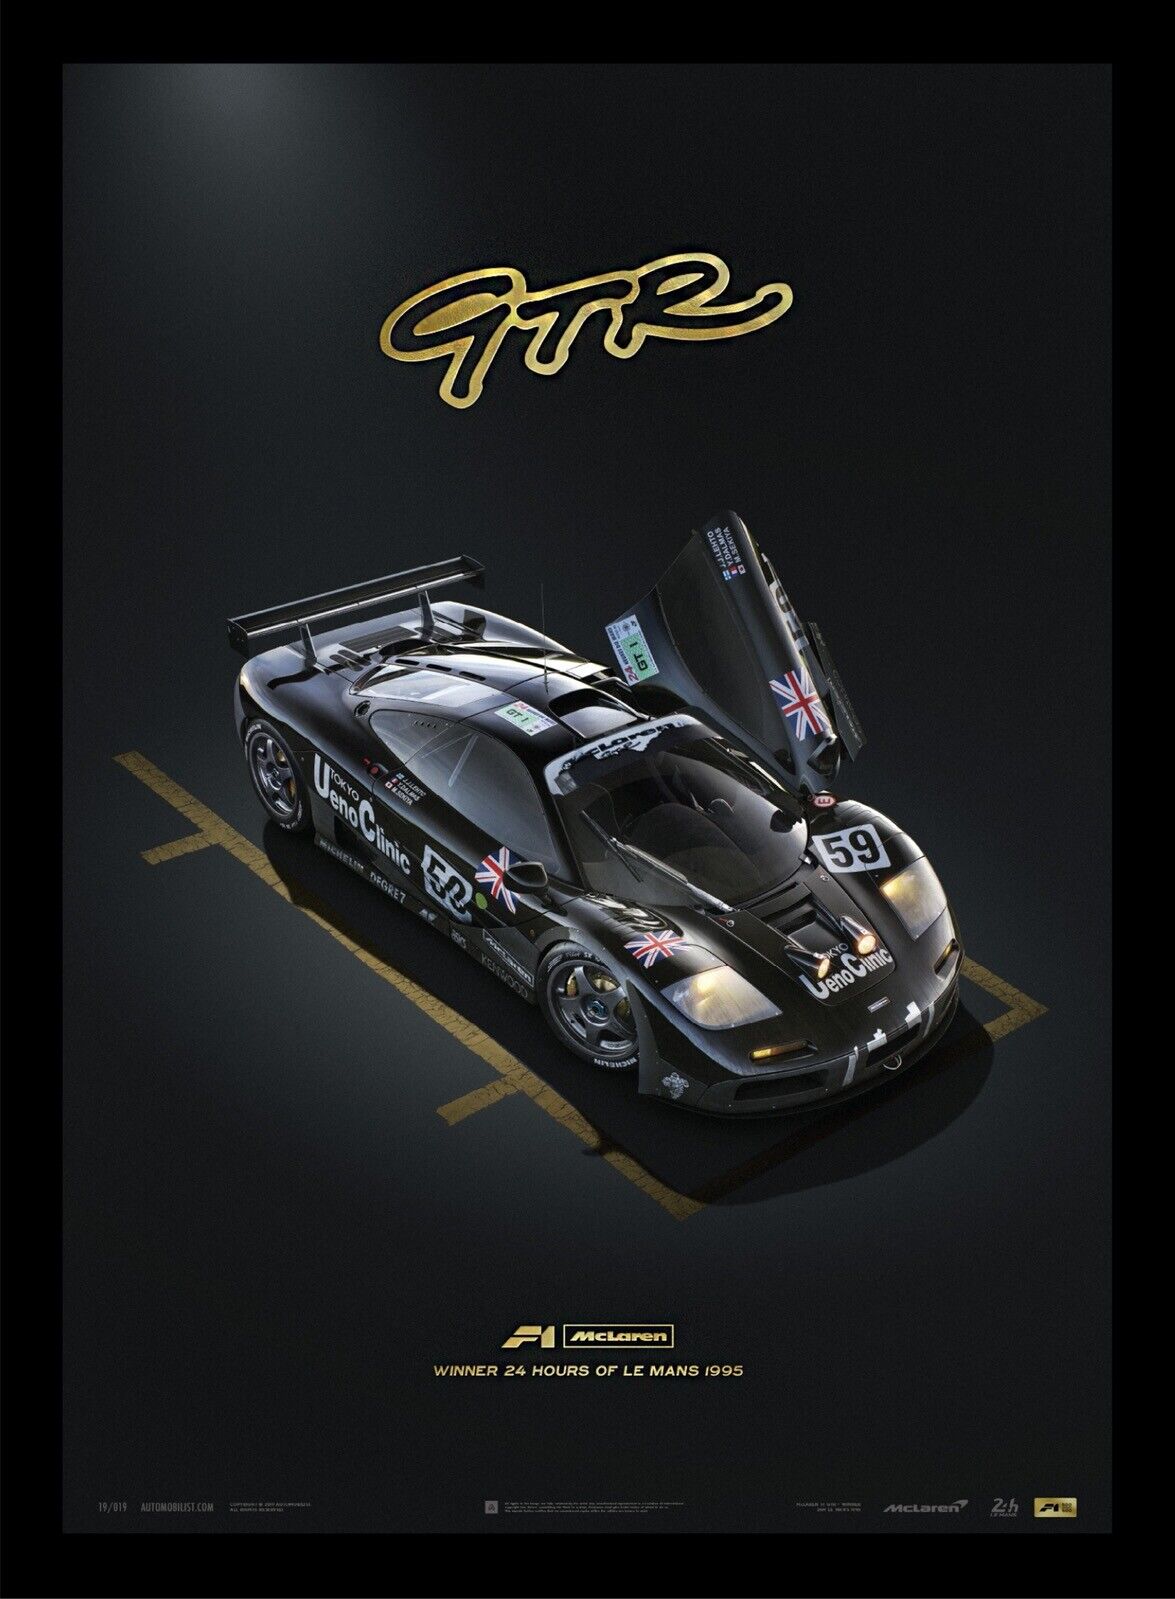 McLaren F1 GTR 24 Hours 1995 Le Mans Gold Embossed Art Print Poster Ltd Ed 500